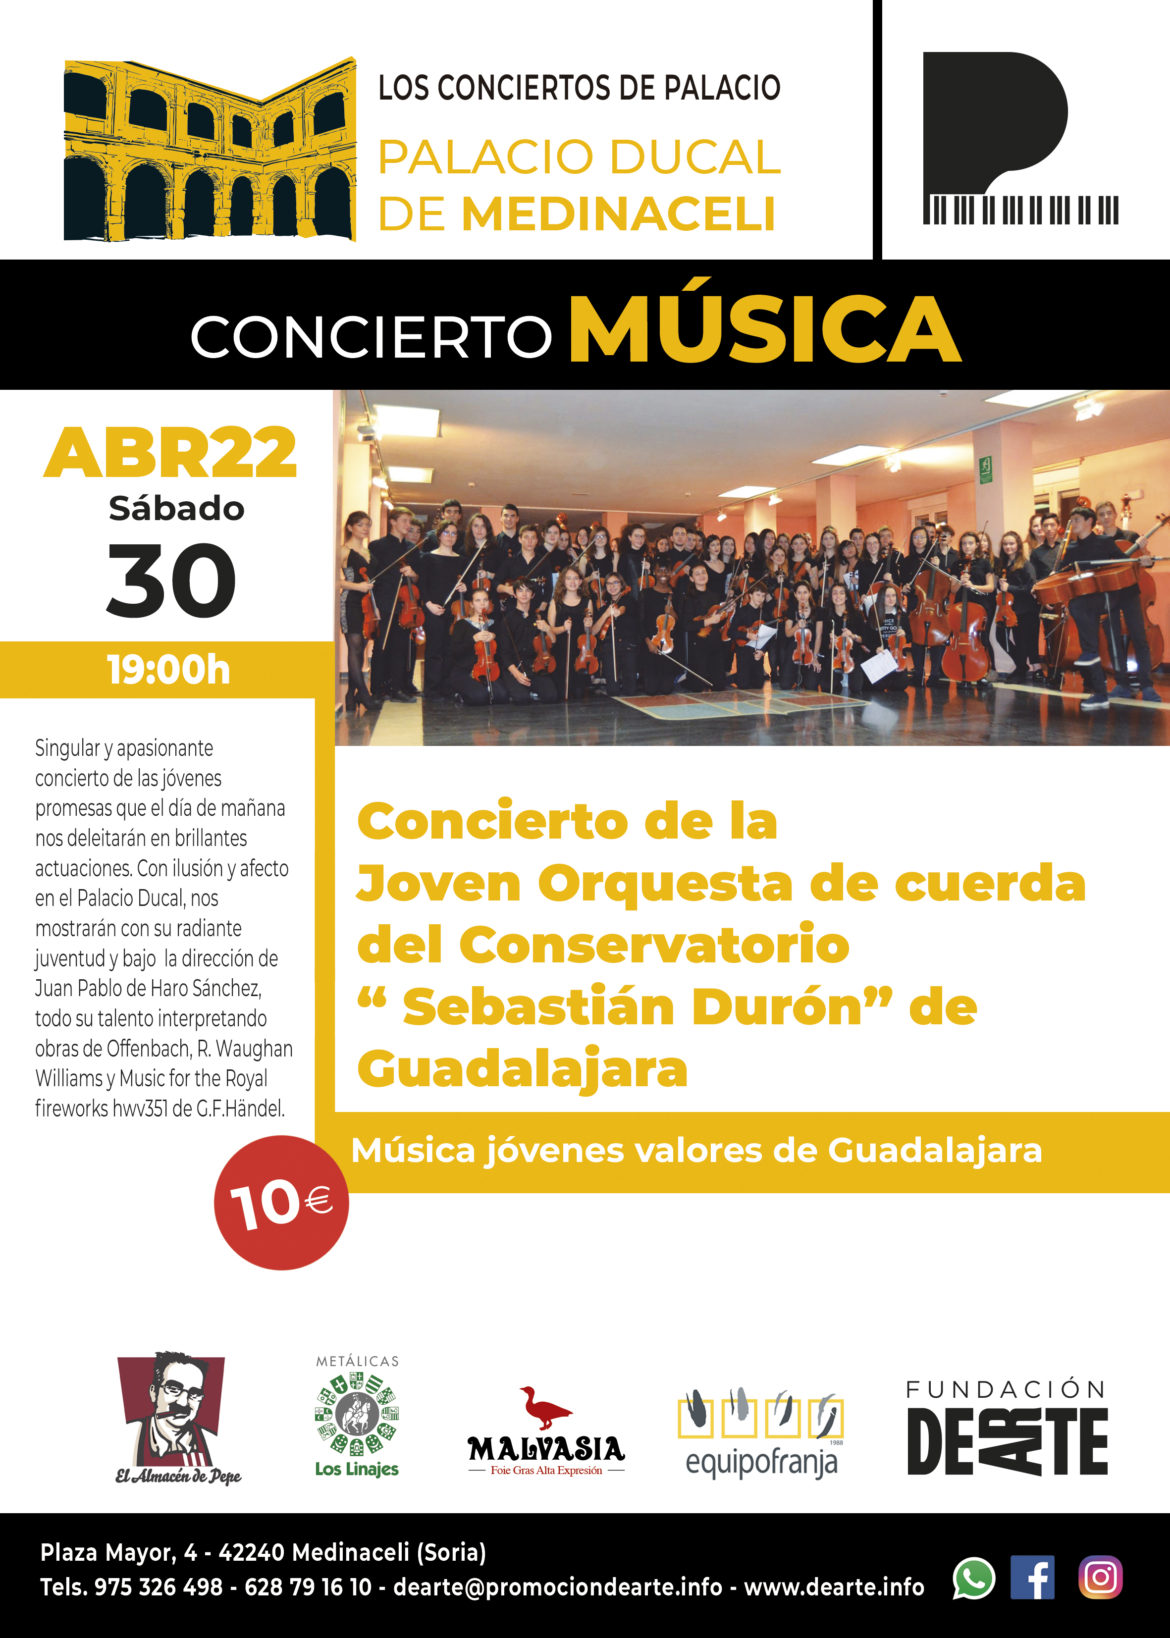 Concierto de la Joven Orquesta de cuerda del Conservatorio ” Sebastián Durón” de Guadalajara